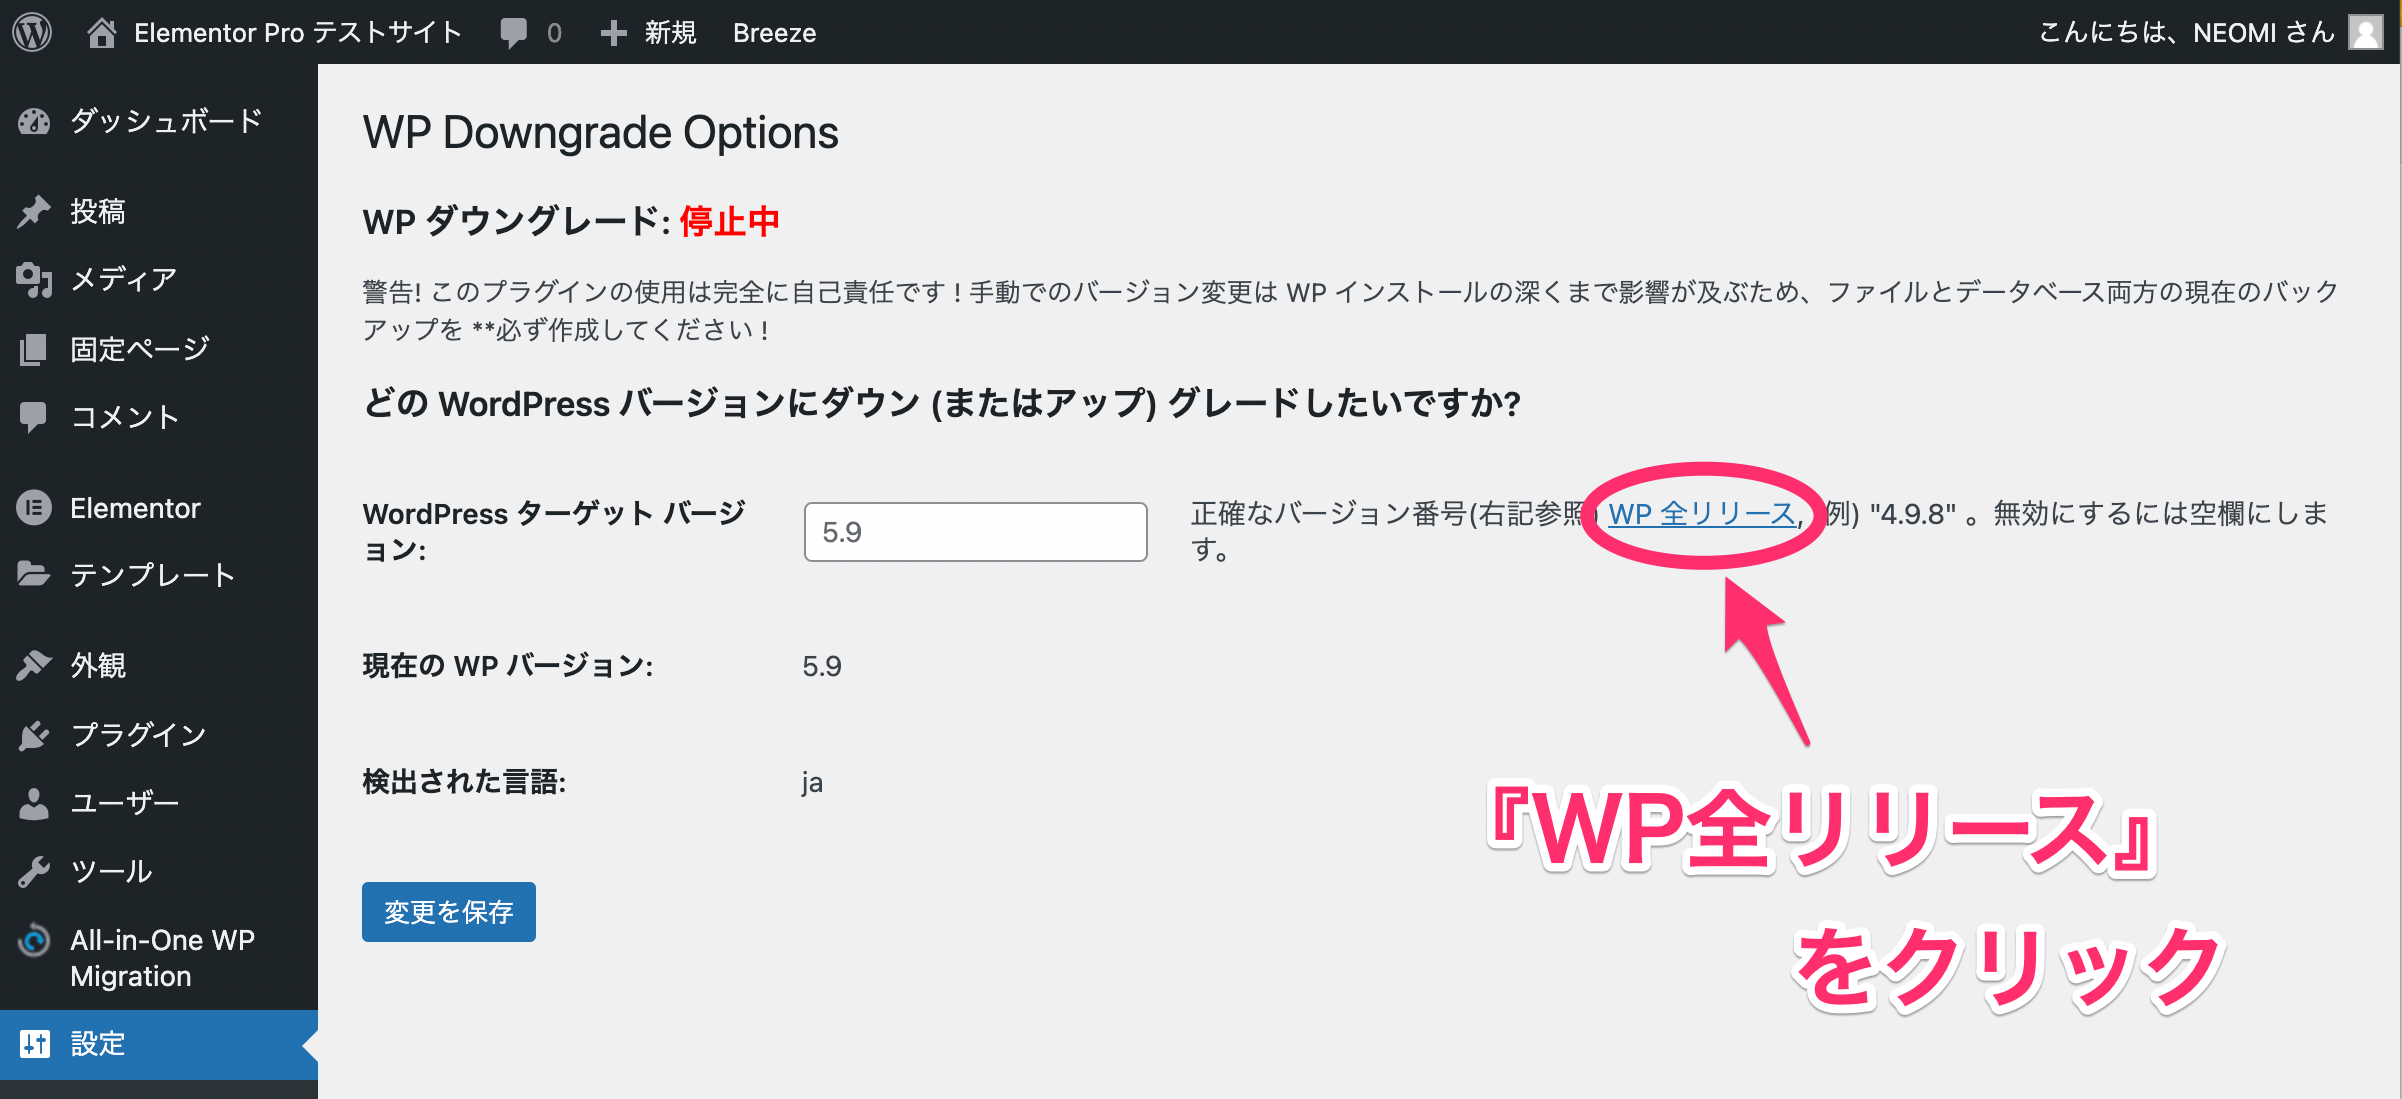 WP Downgrade Optionsのページ・『WP全リリース』をクリック